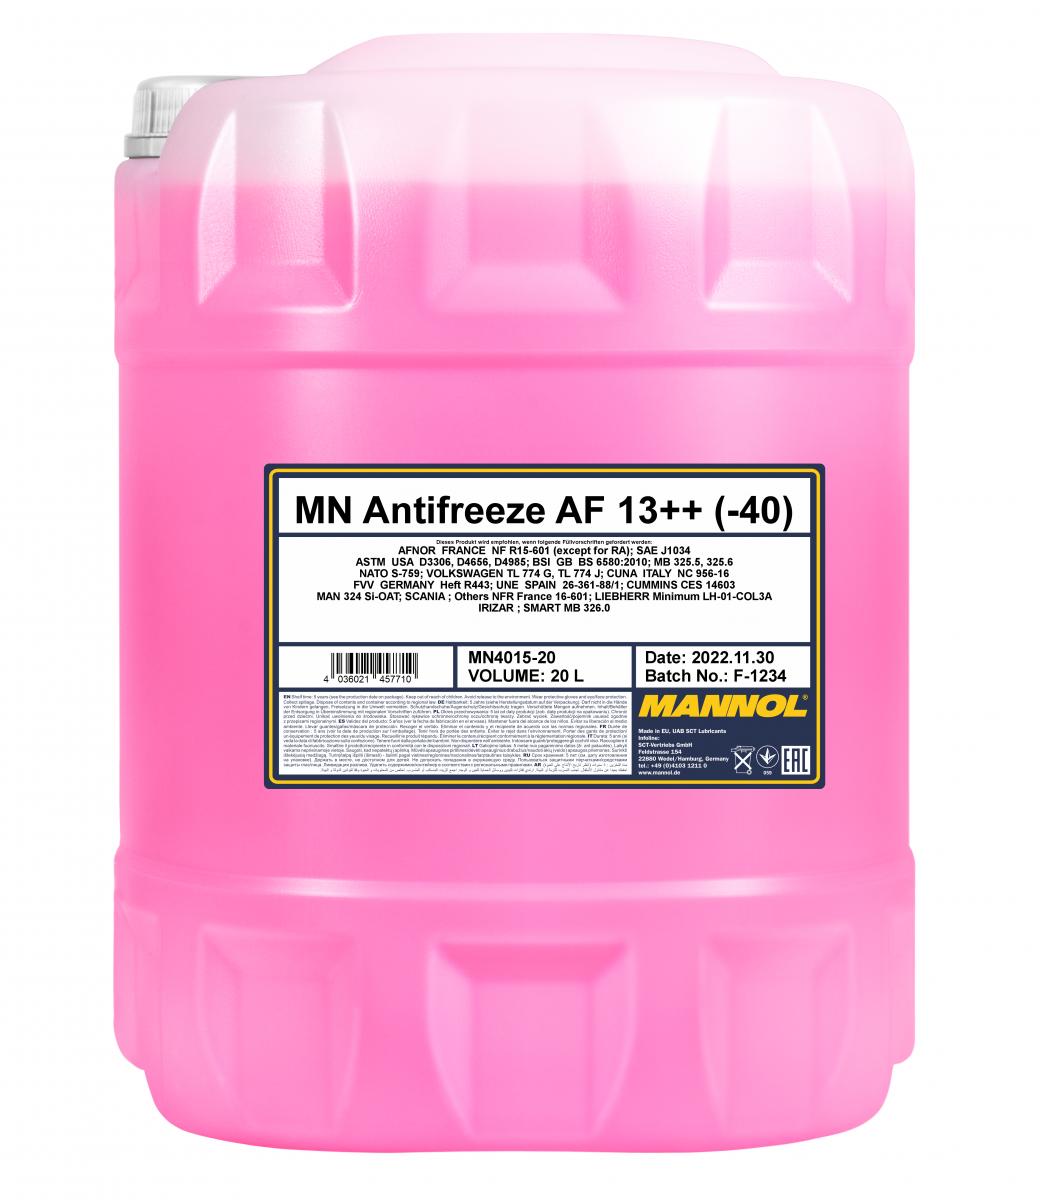 MN Antifreeze AF 13++ (-40) 4036021457710 MN4015-20